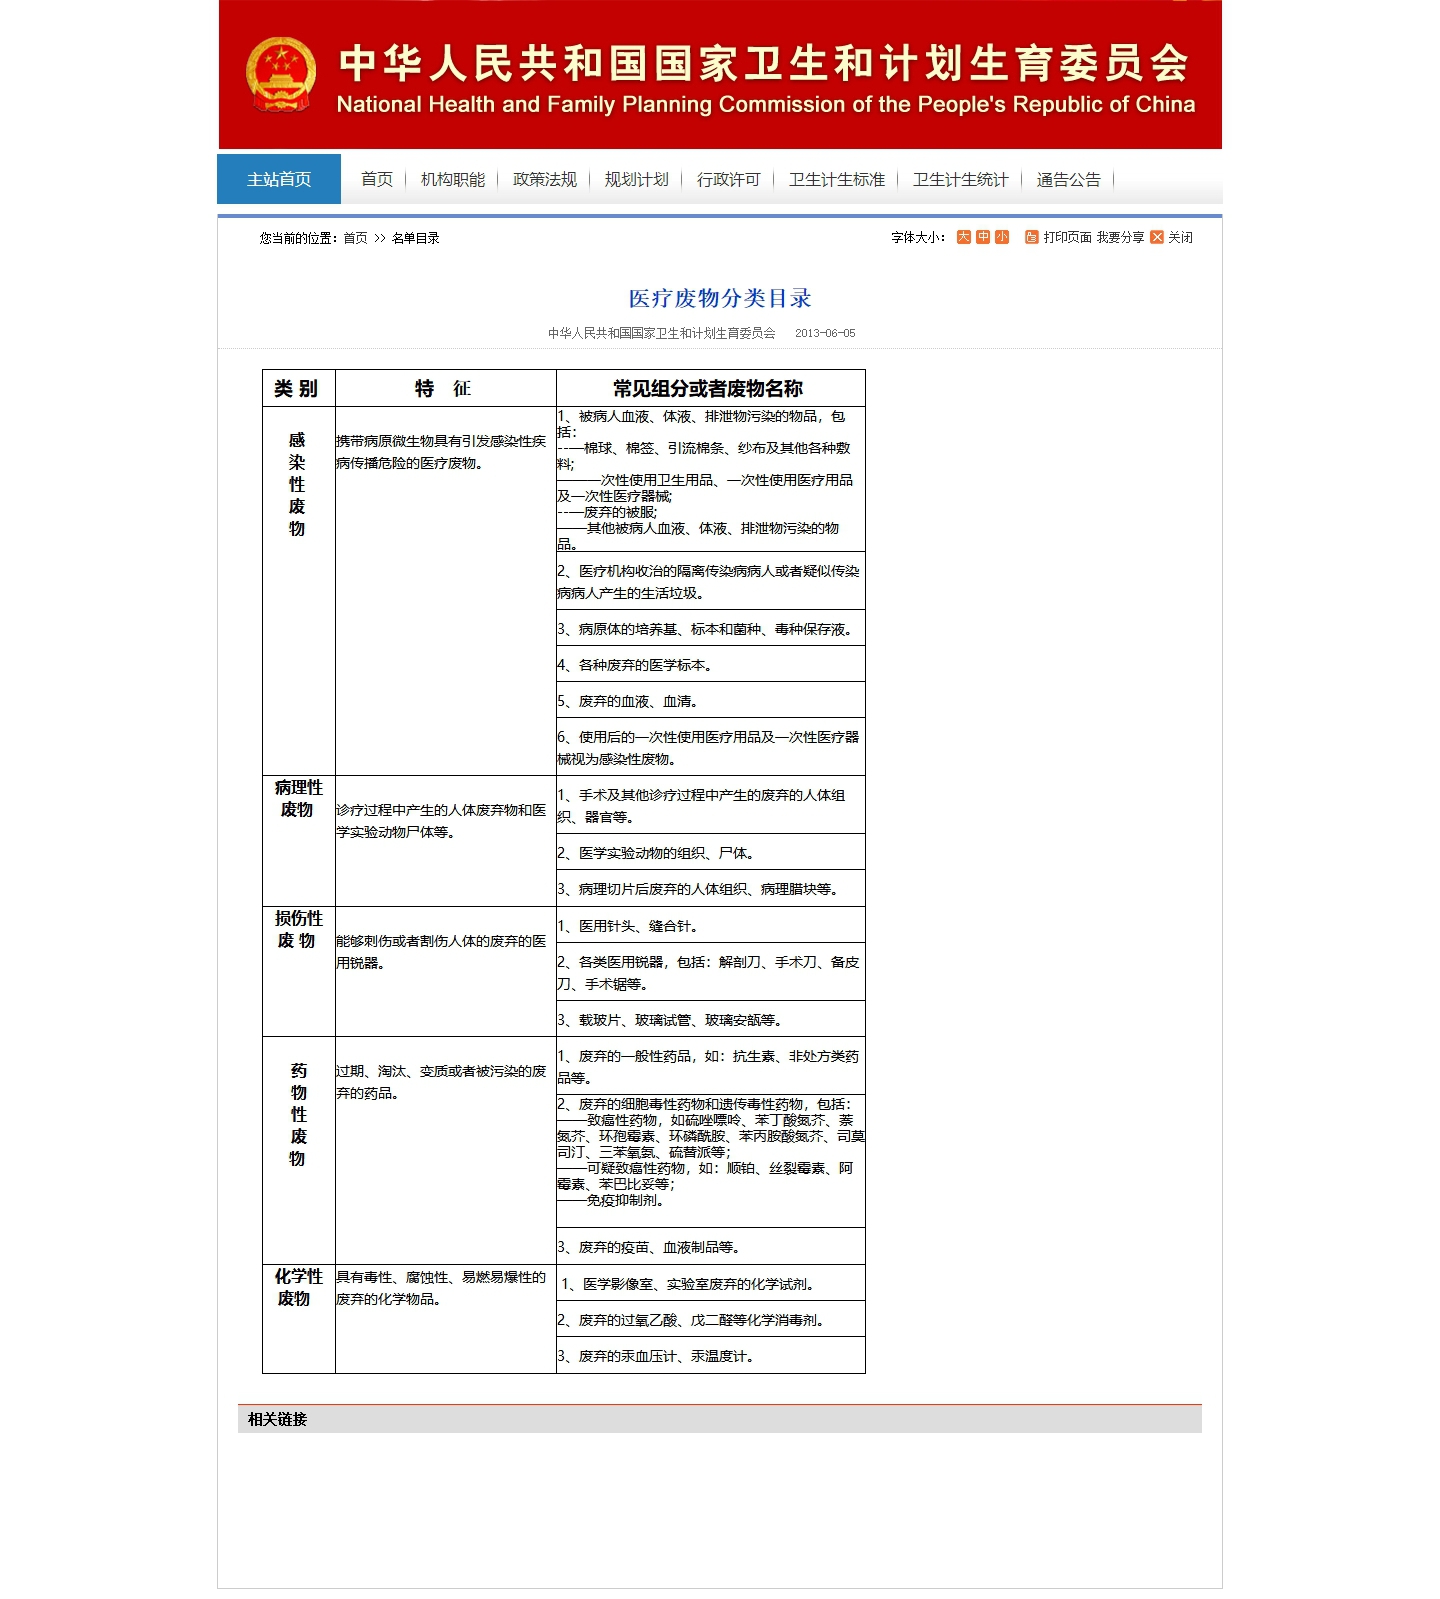 医疗废物分类目录 - 中华人民共和国国家卫生和计划生育委员会.jpg